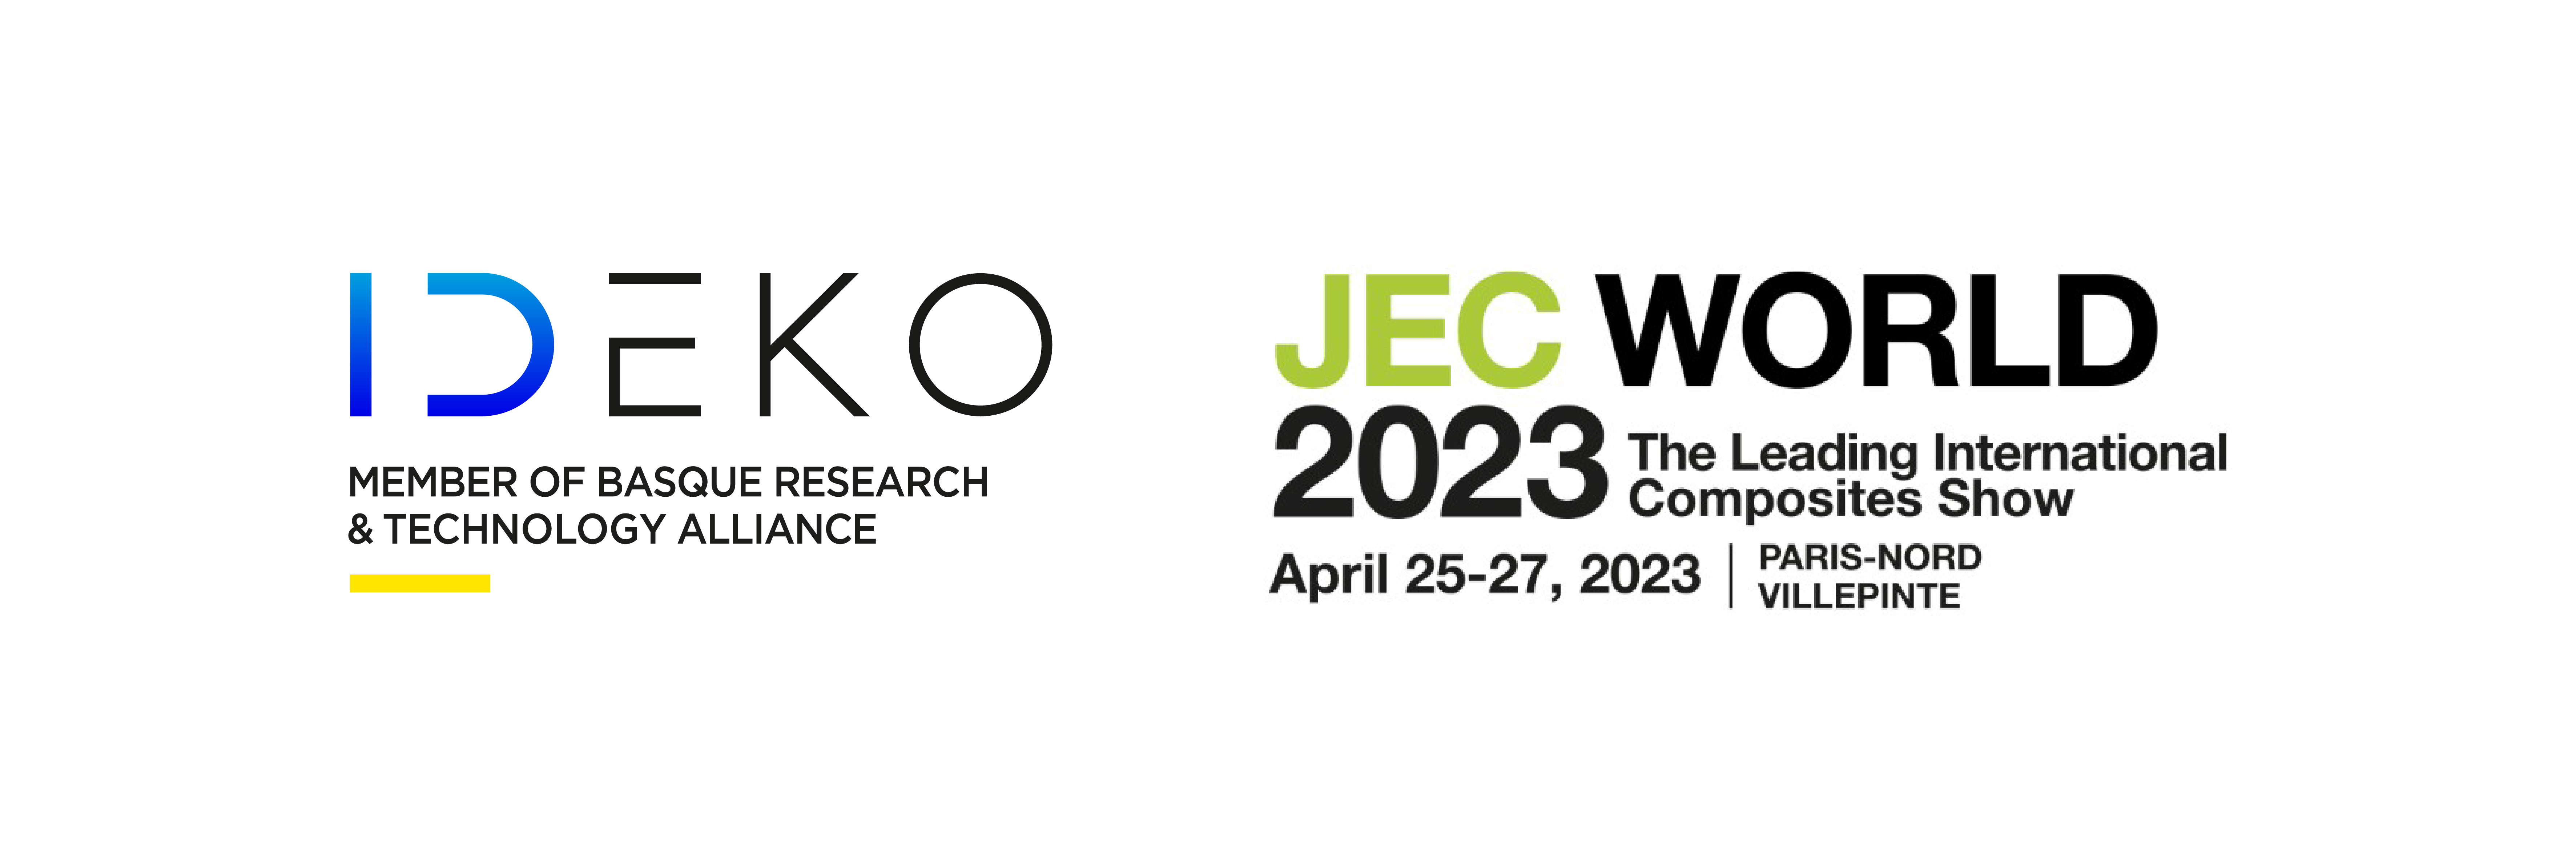 IDEKO presentará en JEC World 2023 sus avances en composites para la fabricación automatizada de piezas 